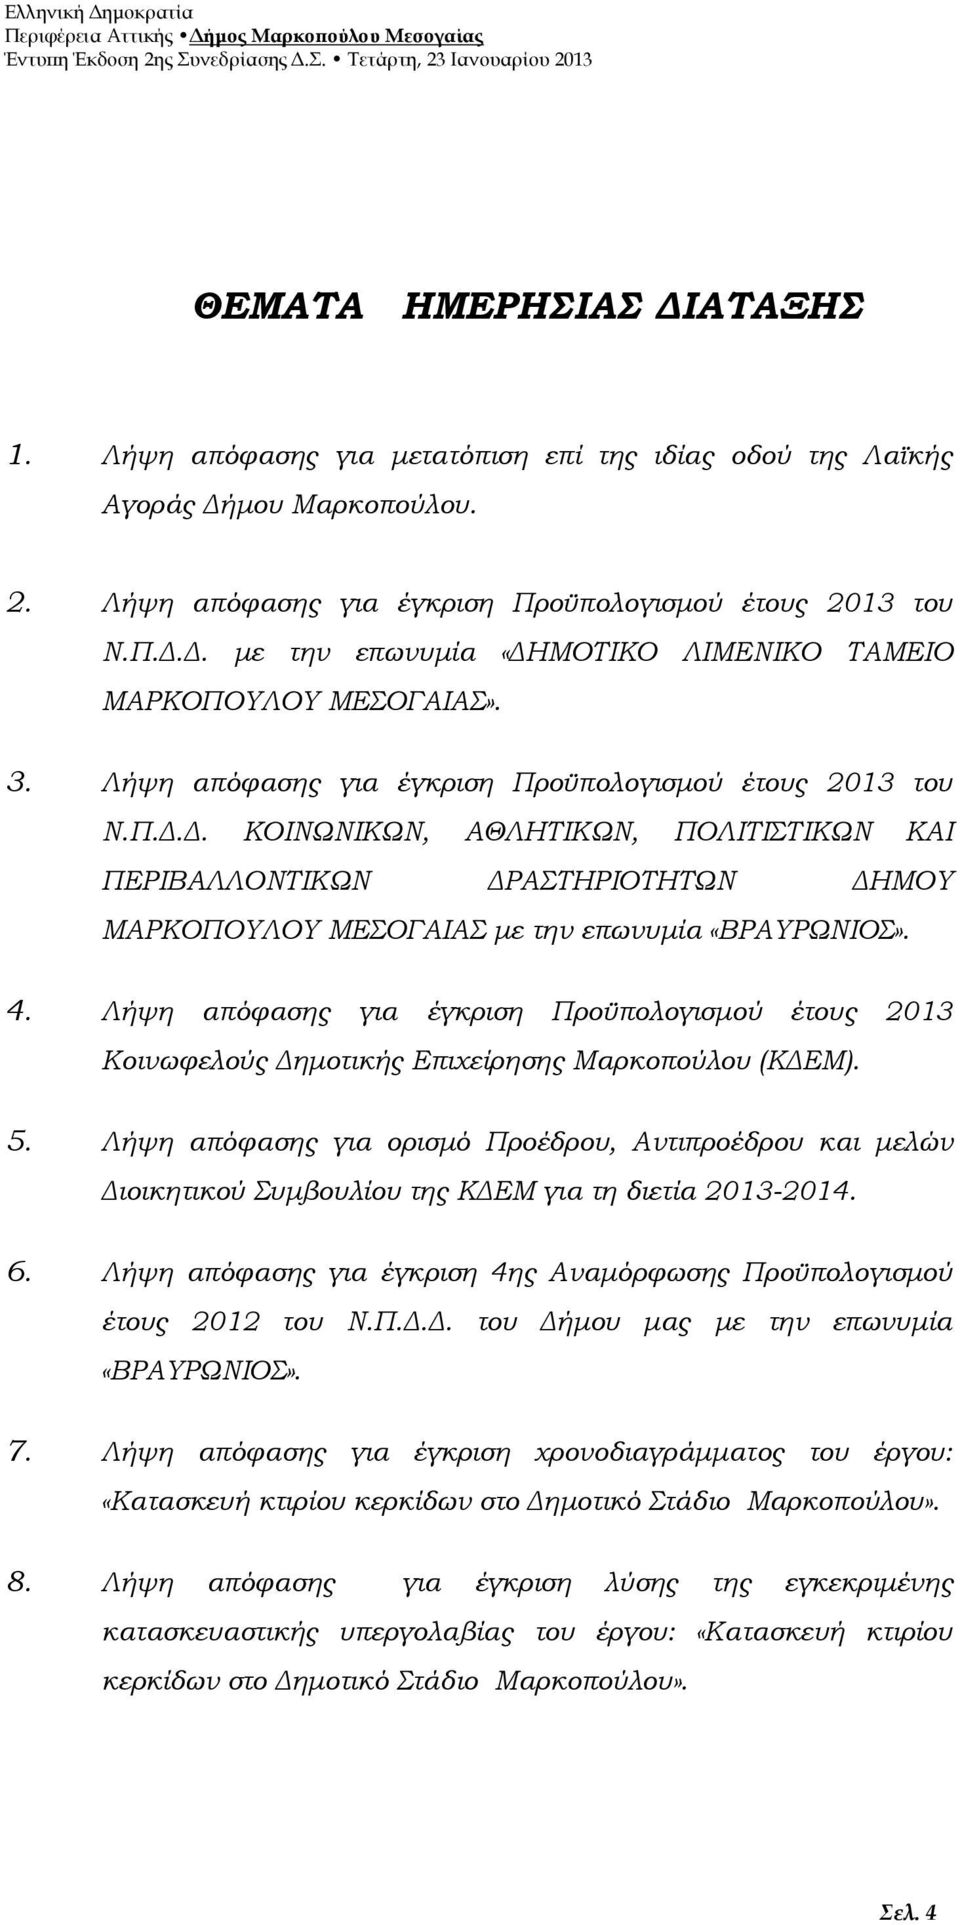 Λήψη απόφασης για έγκριση Προϋπολογισμού έτους 2013 Κοινωφελούς Δημοτικής Επιχείρησης Μαρκοπούλου (ΚΔΕΜ). 5.